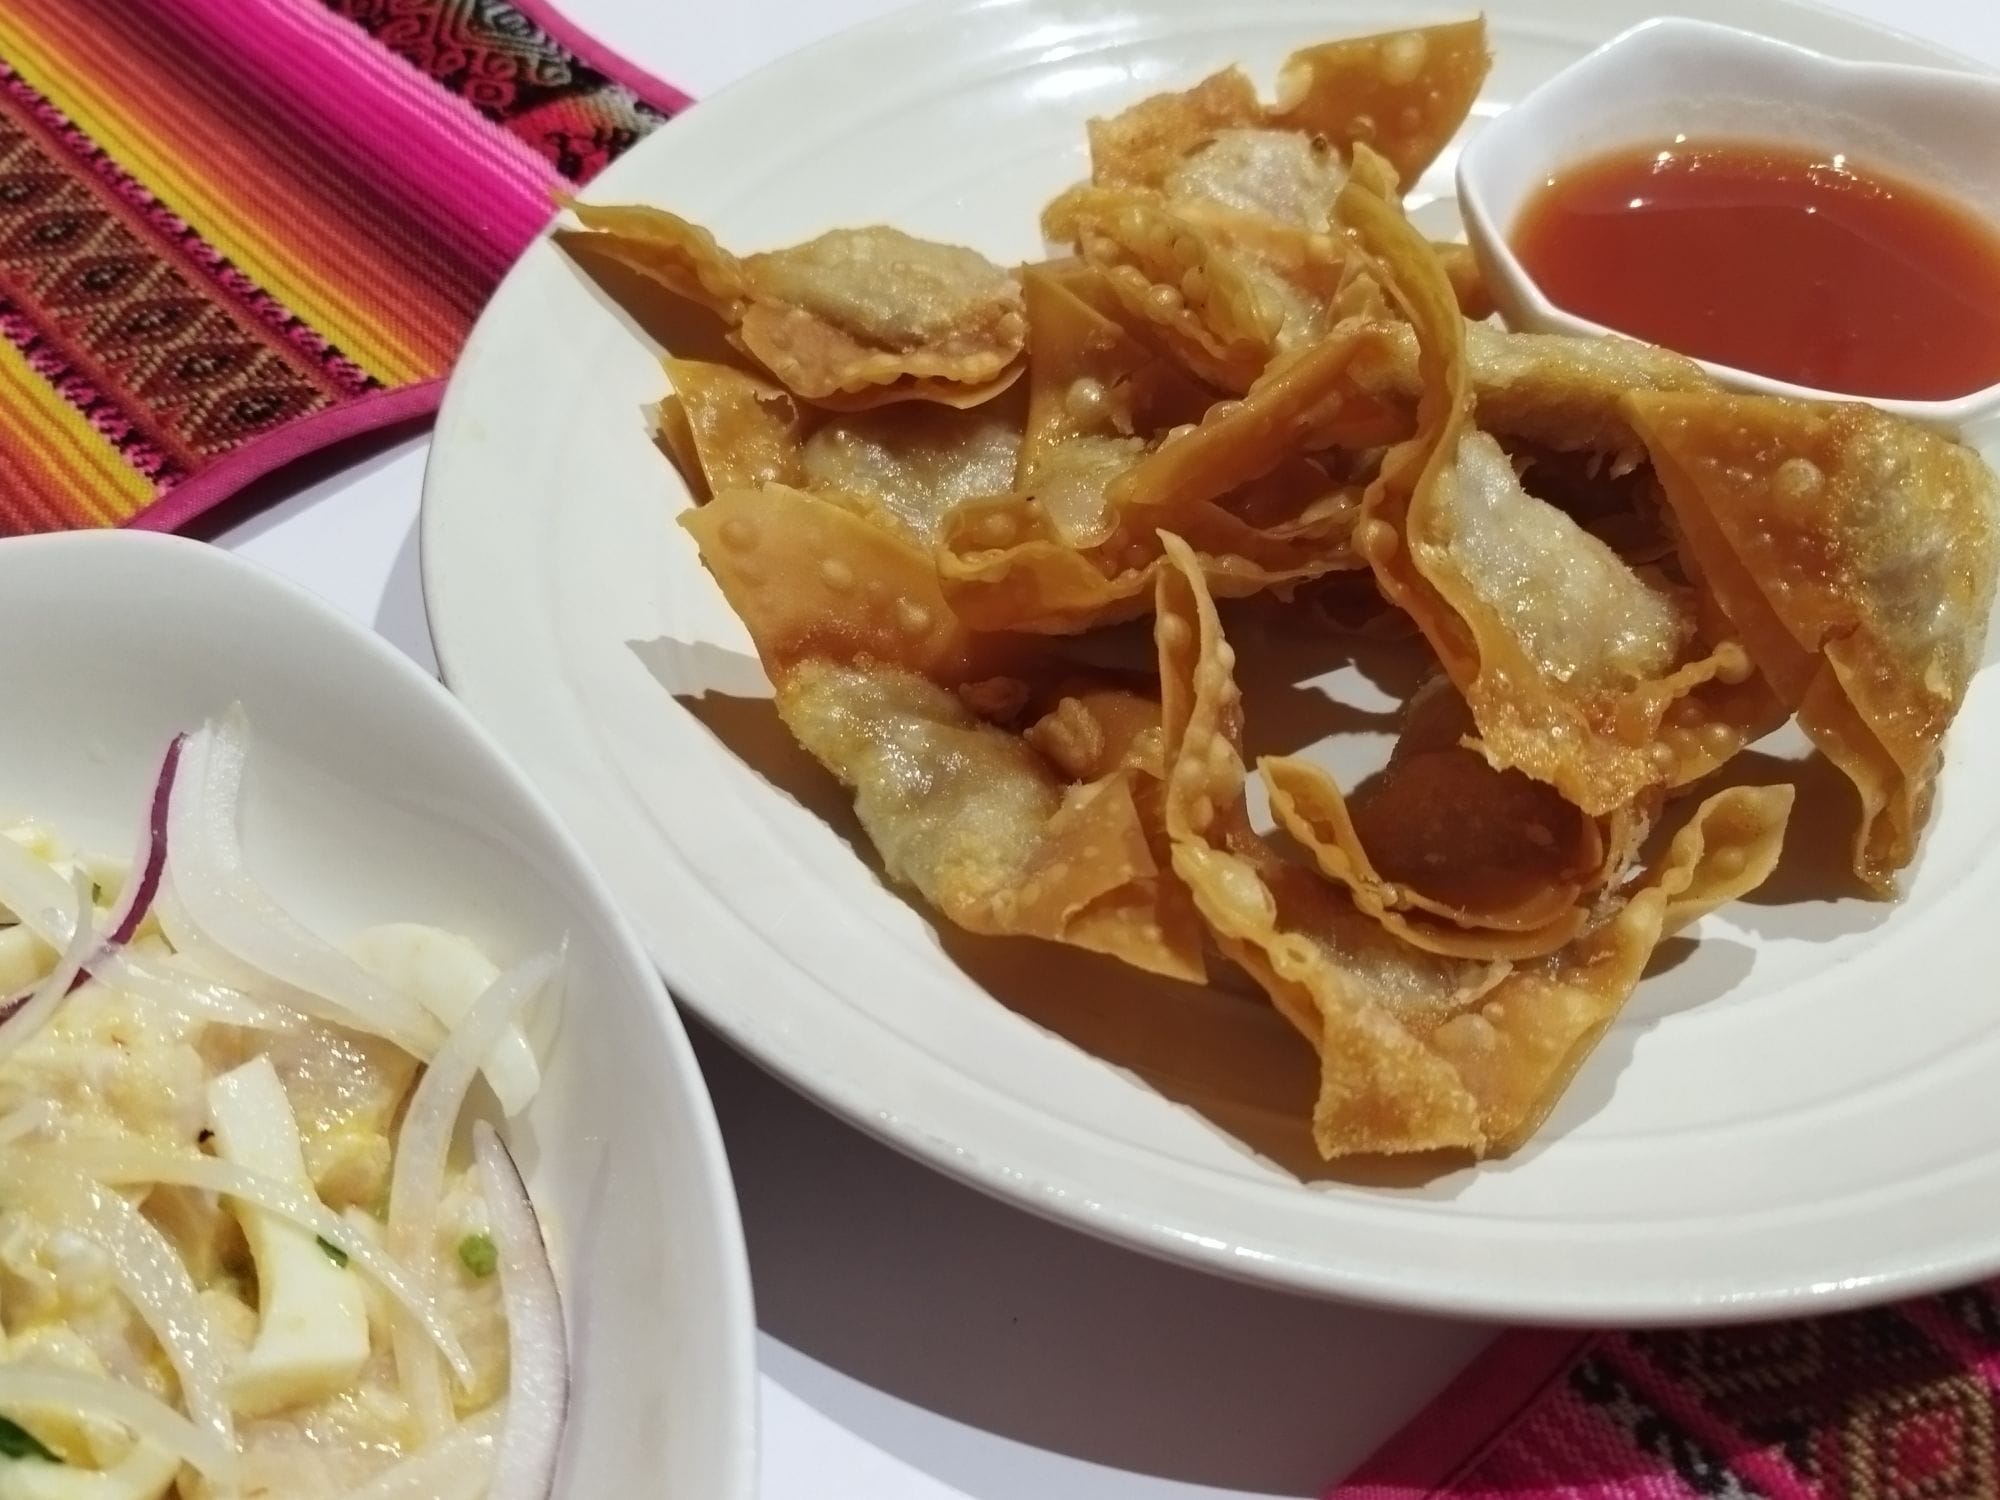 「エル・パイサノ」で食べた海鮮食材豊富なマリネ「セビーチェ」と、ペルー中華料理の揚げワンタン